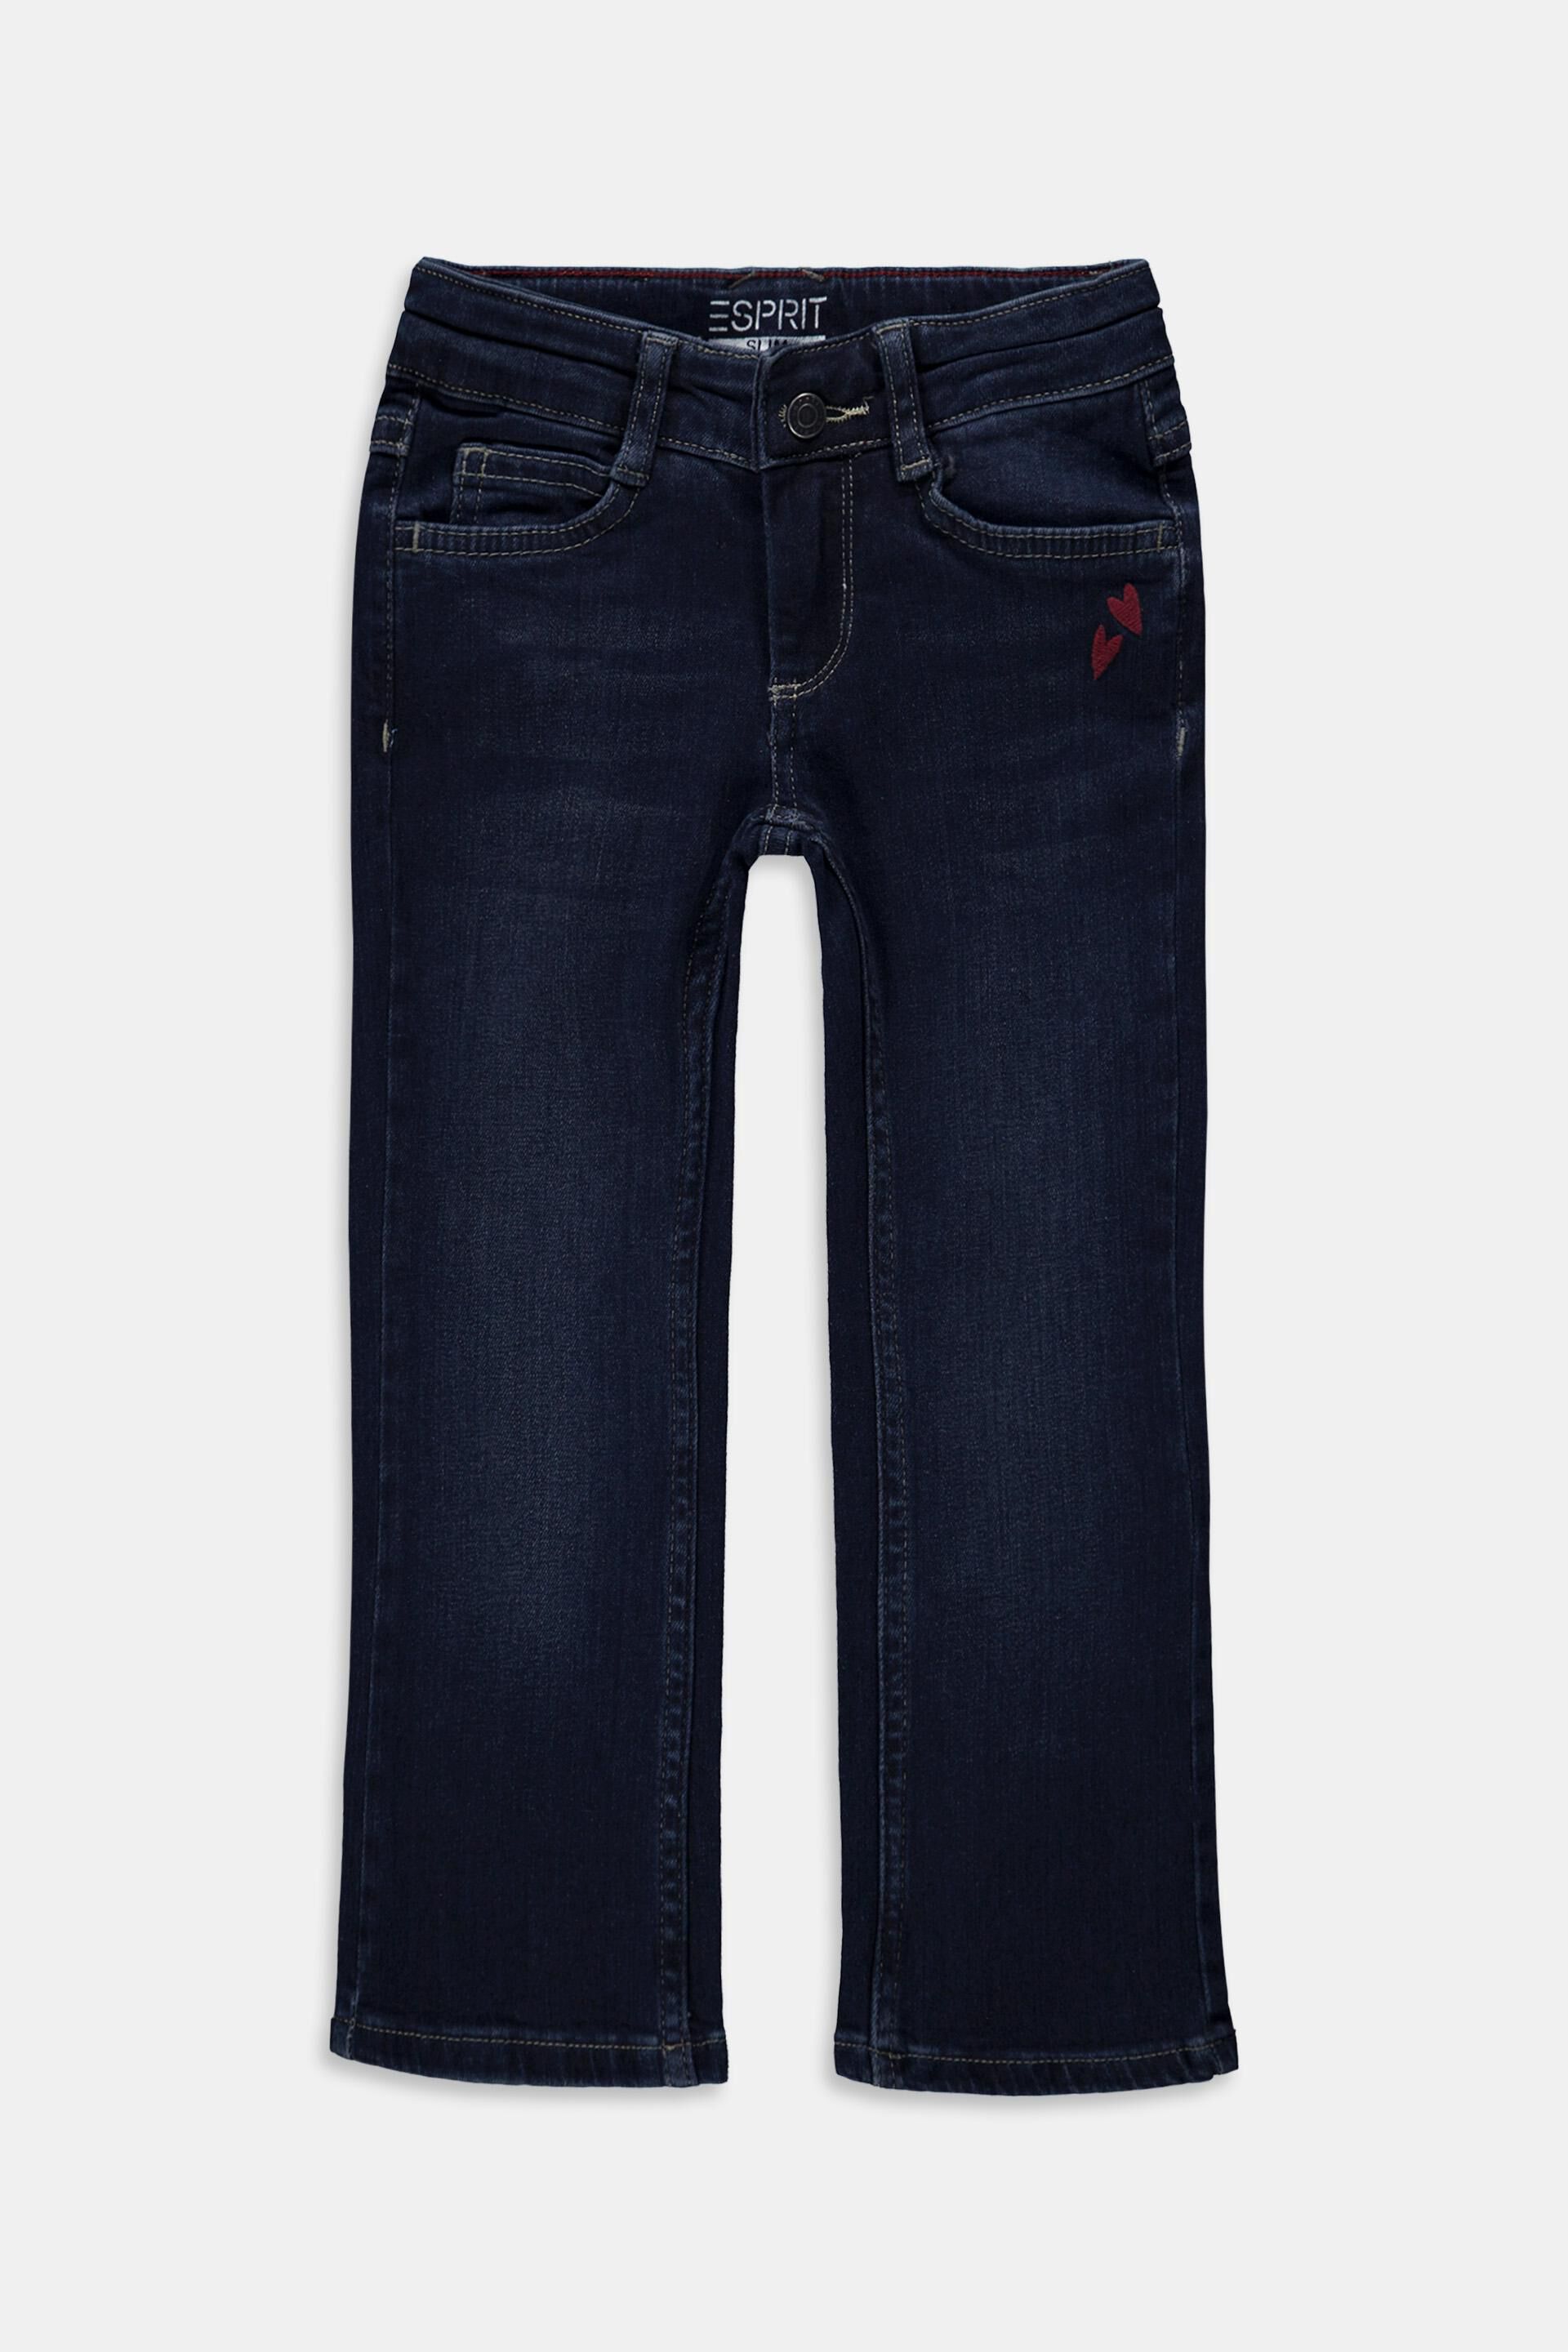 Broek Raso Stretch MicroFantasie 2-4 anni^104 Amazon Meisjes Kleding Broeken & Jeans Korte broeken Capris 